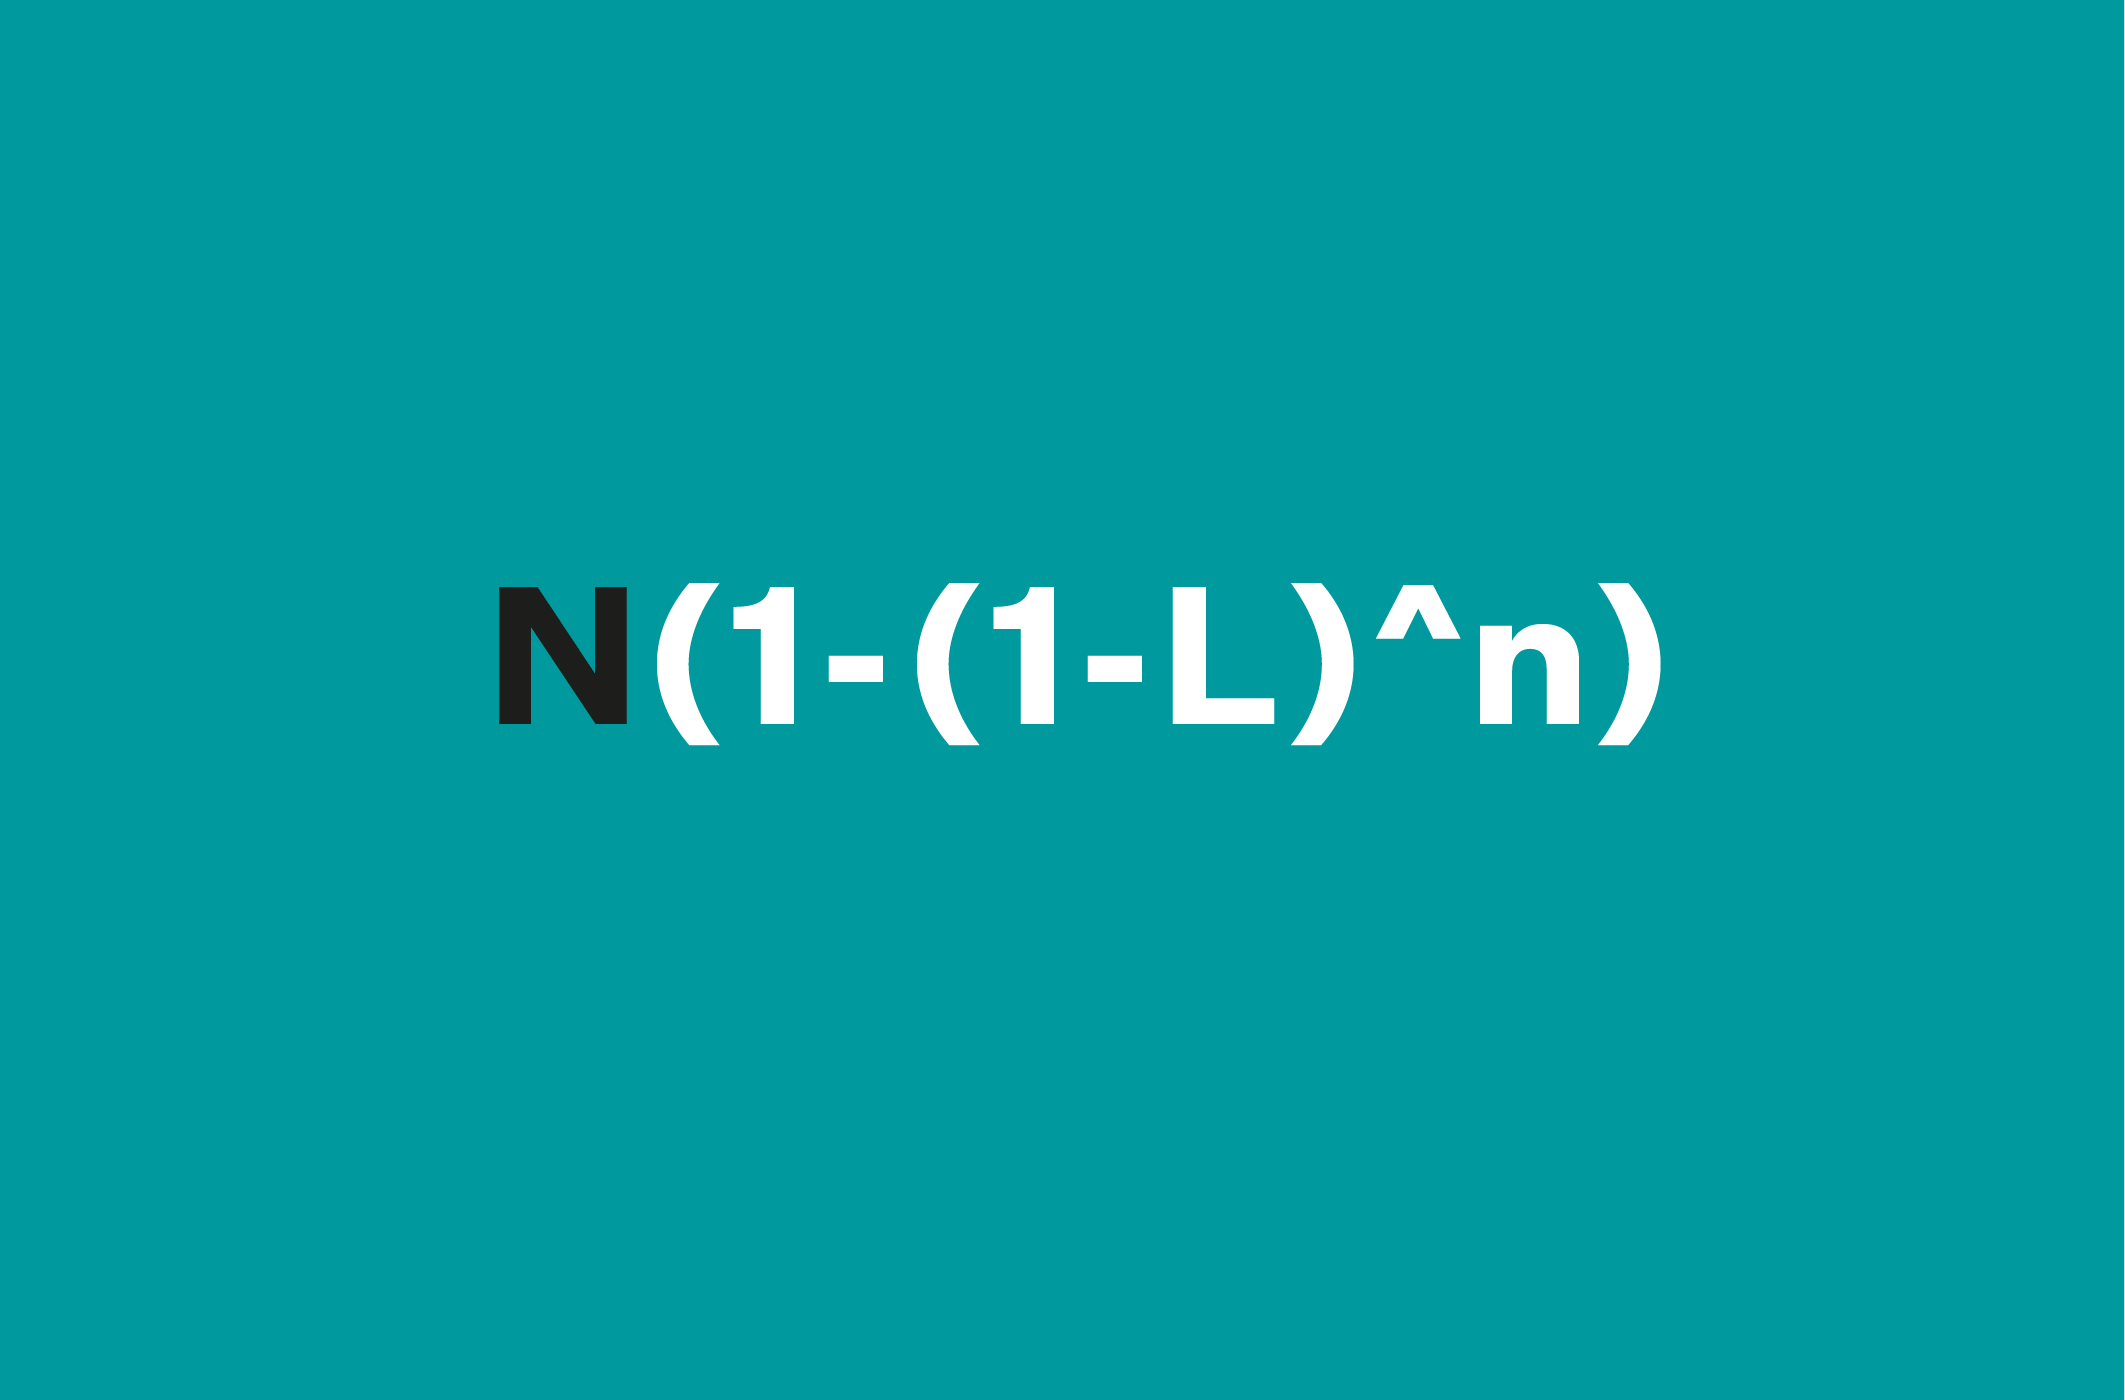 Formel N(1-(1-L)^n)